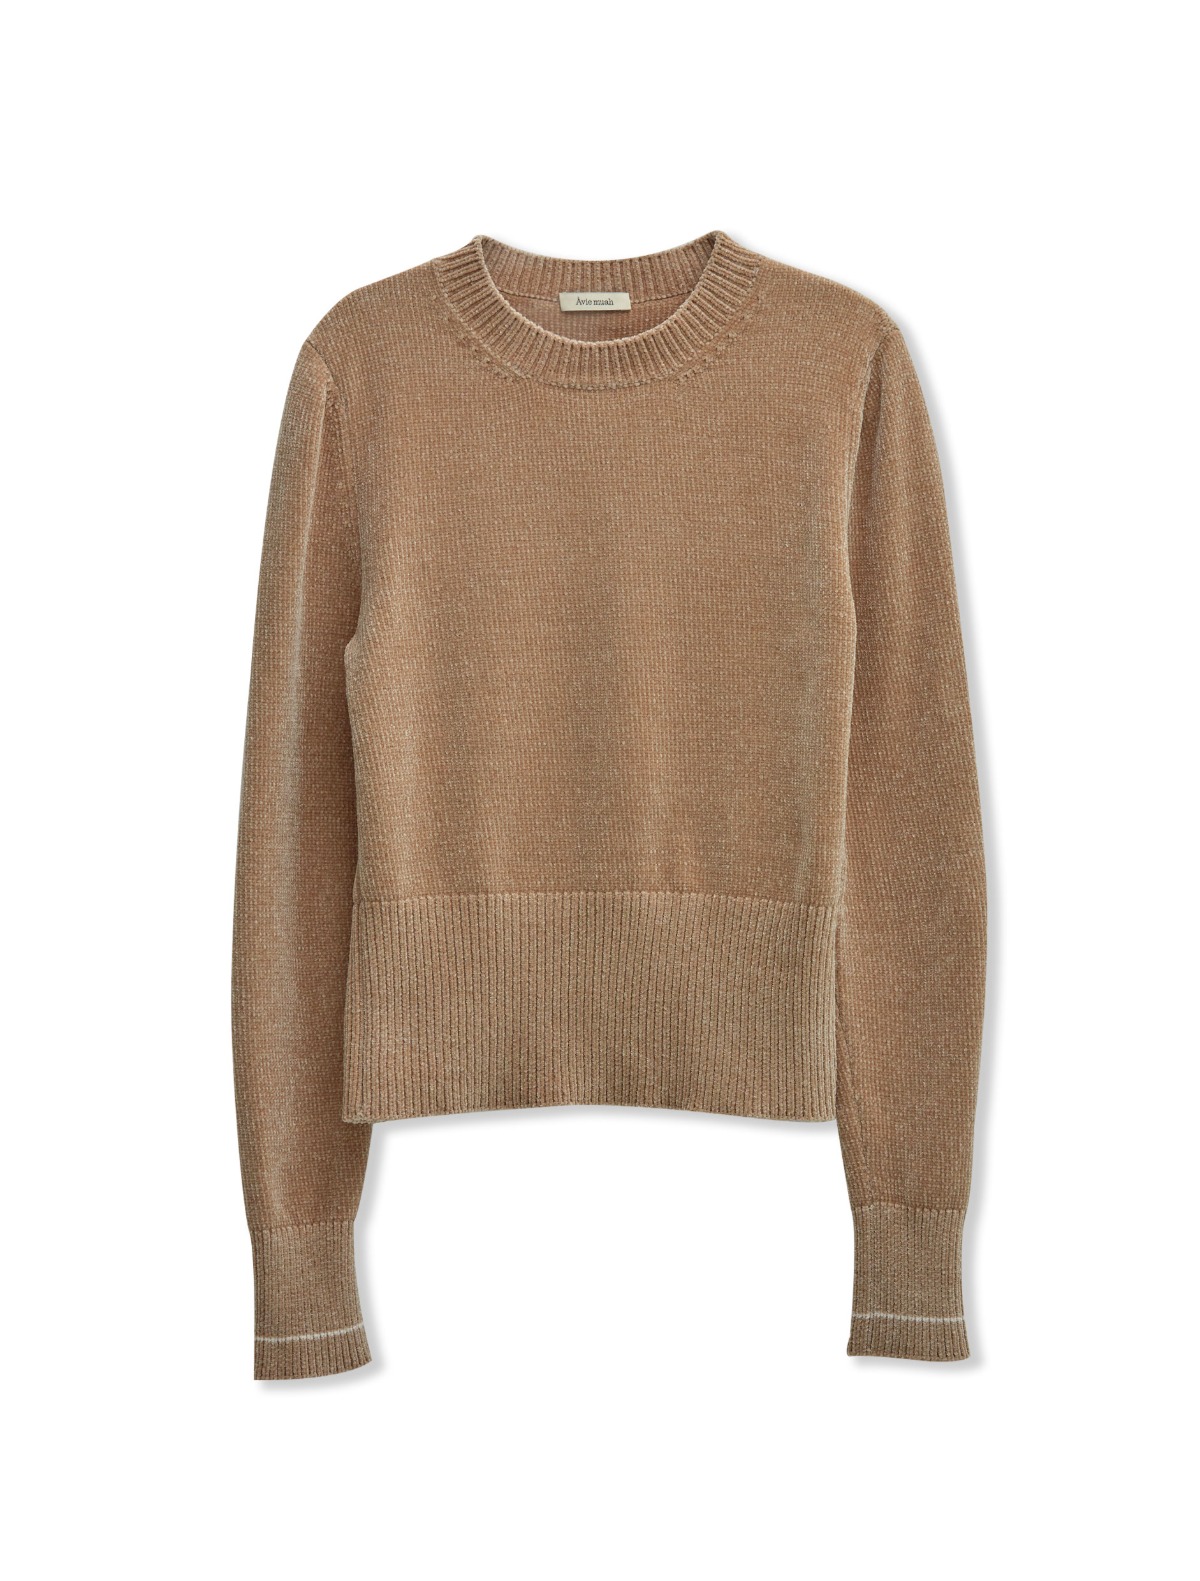 Velvet Yarn Knit Sweater (Beige)